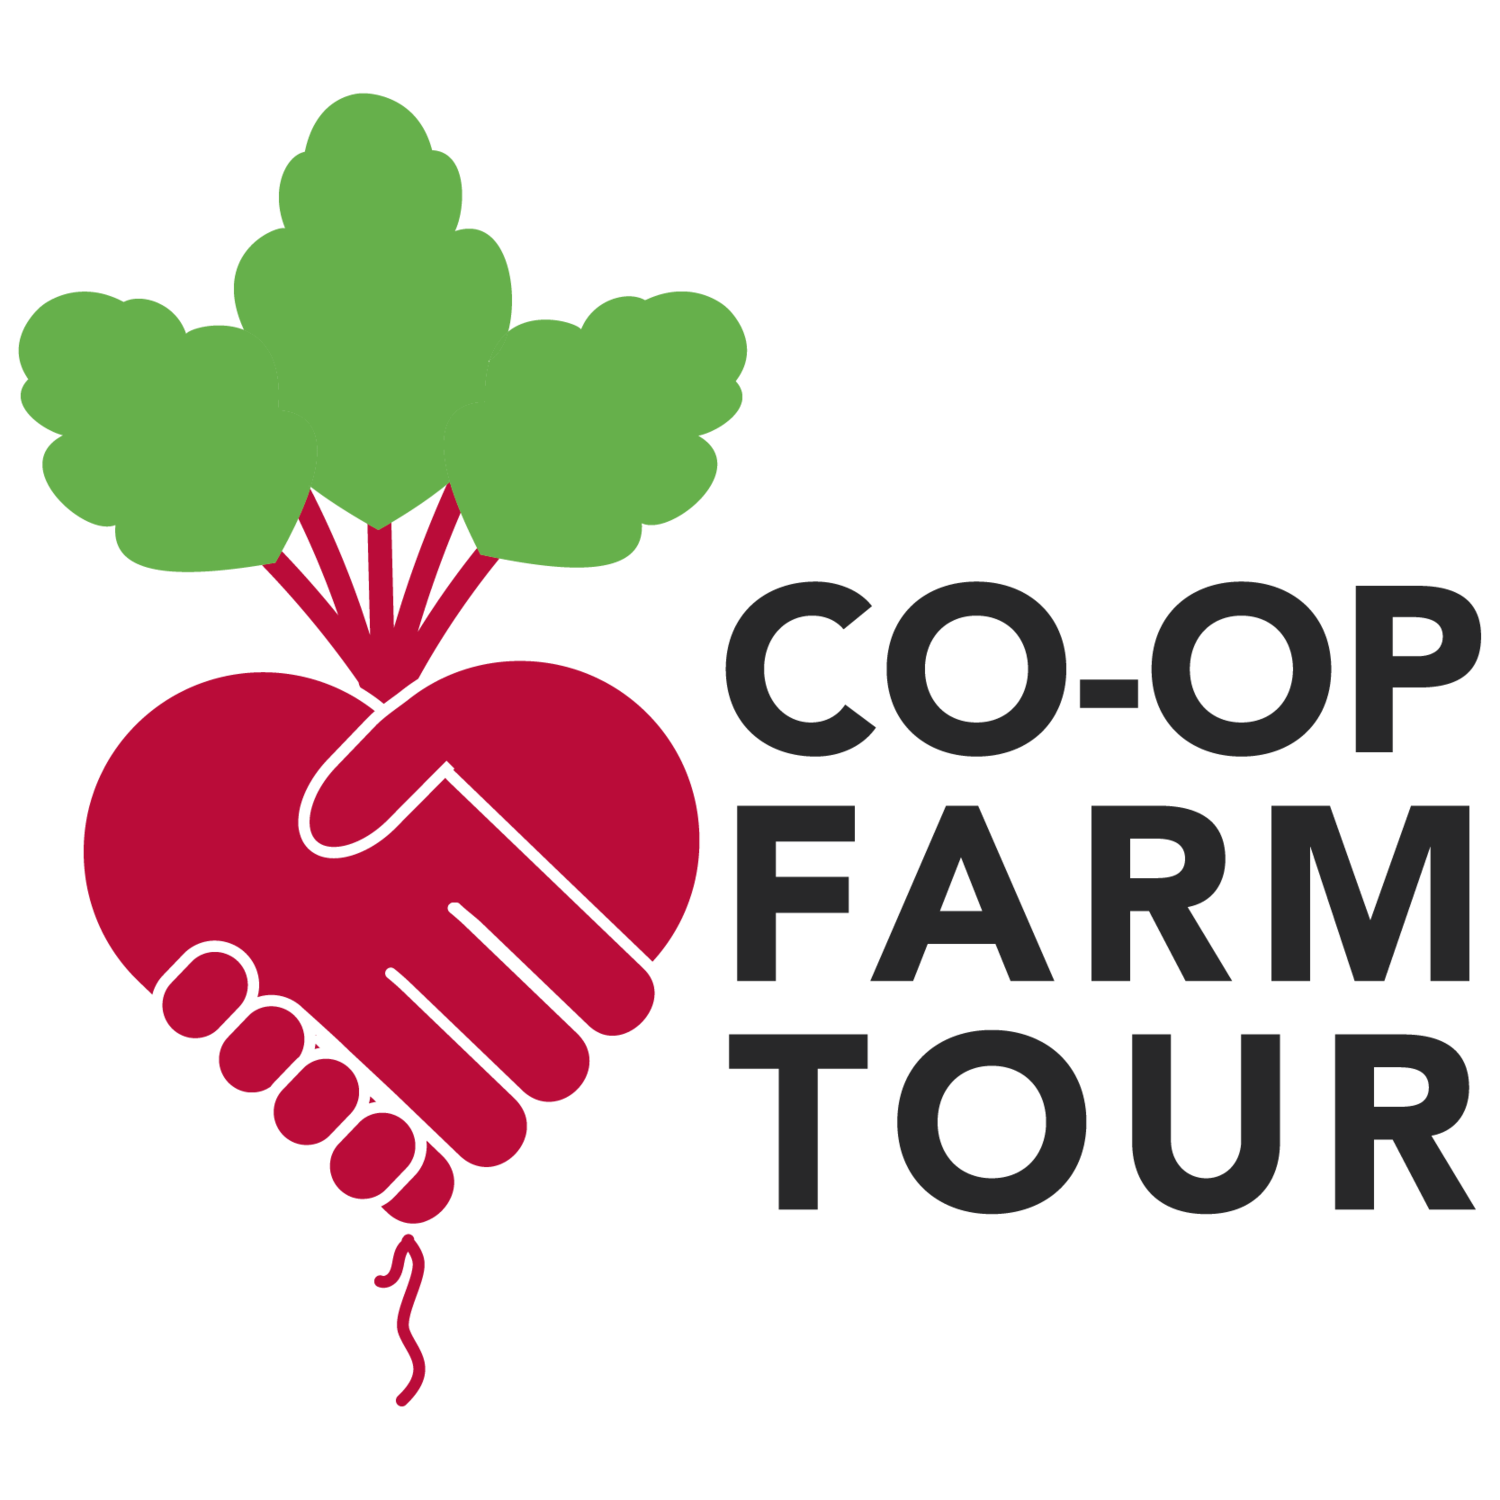 Co-op Farm Tour